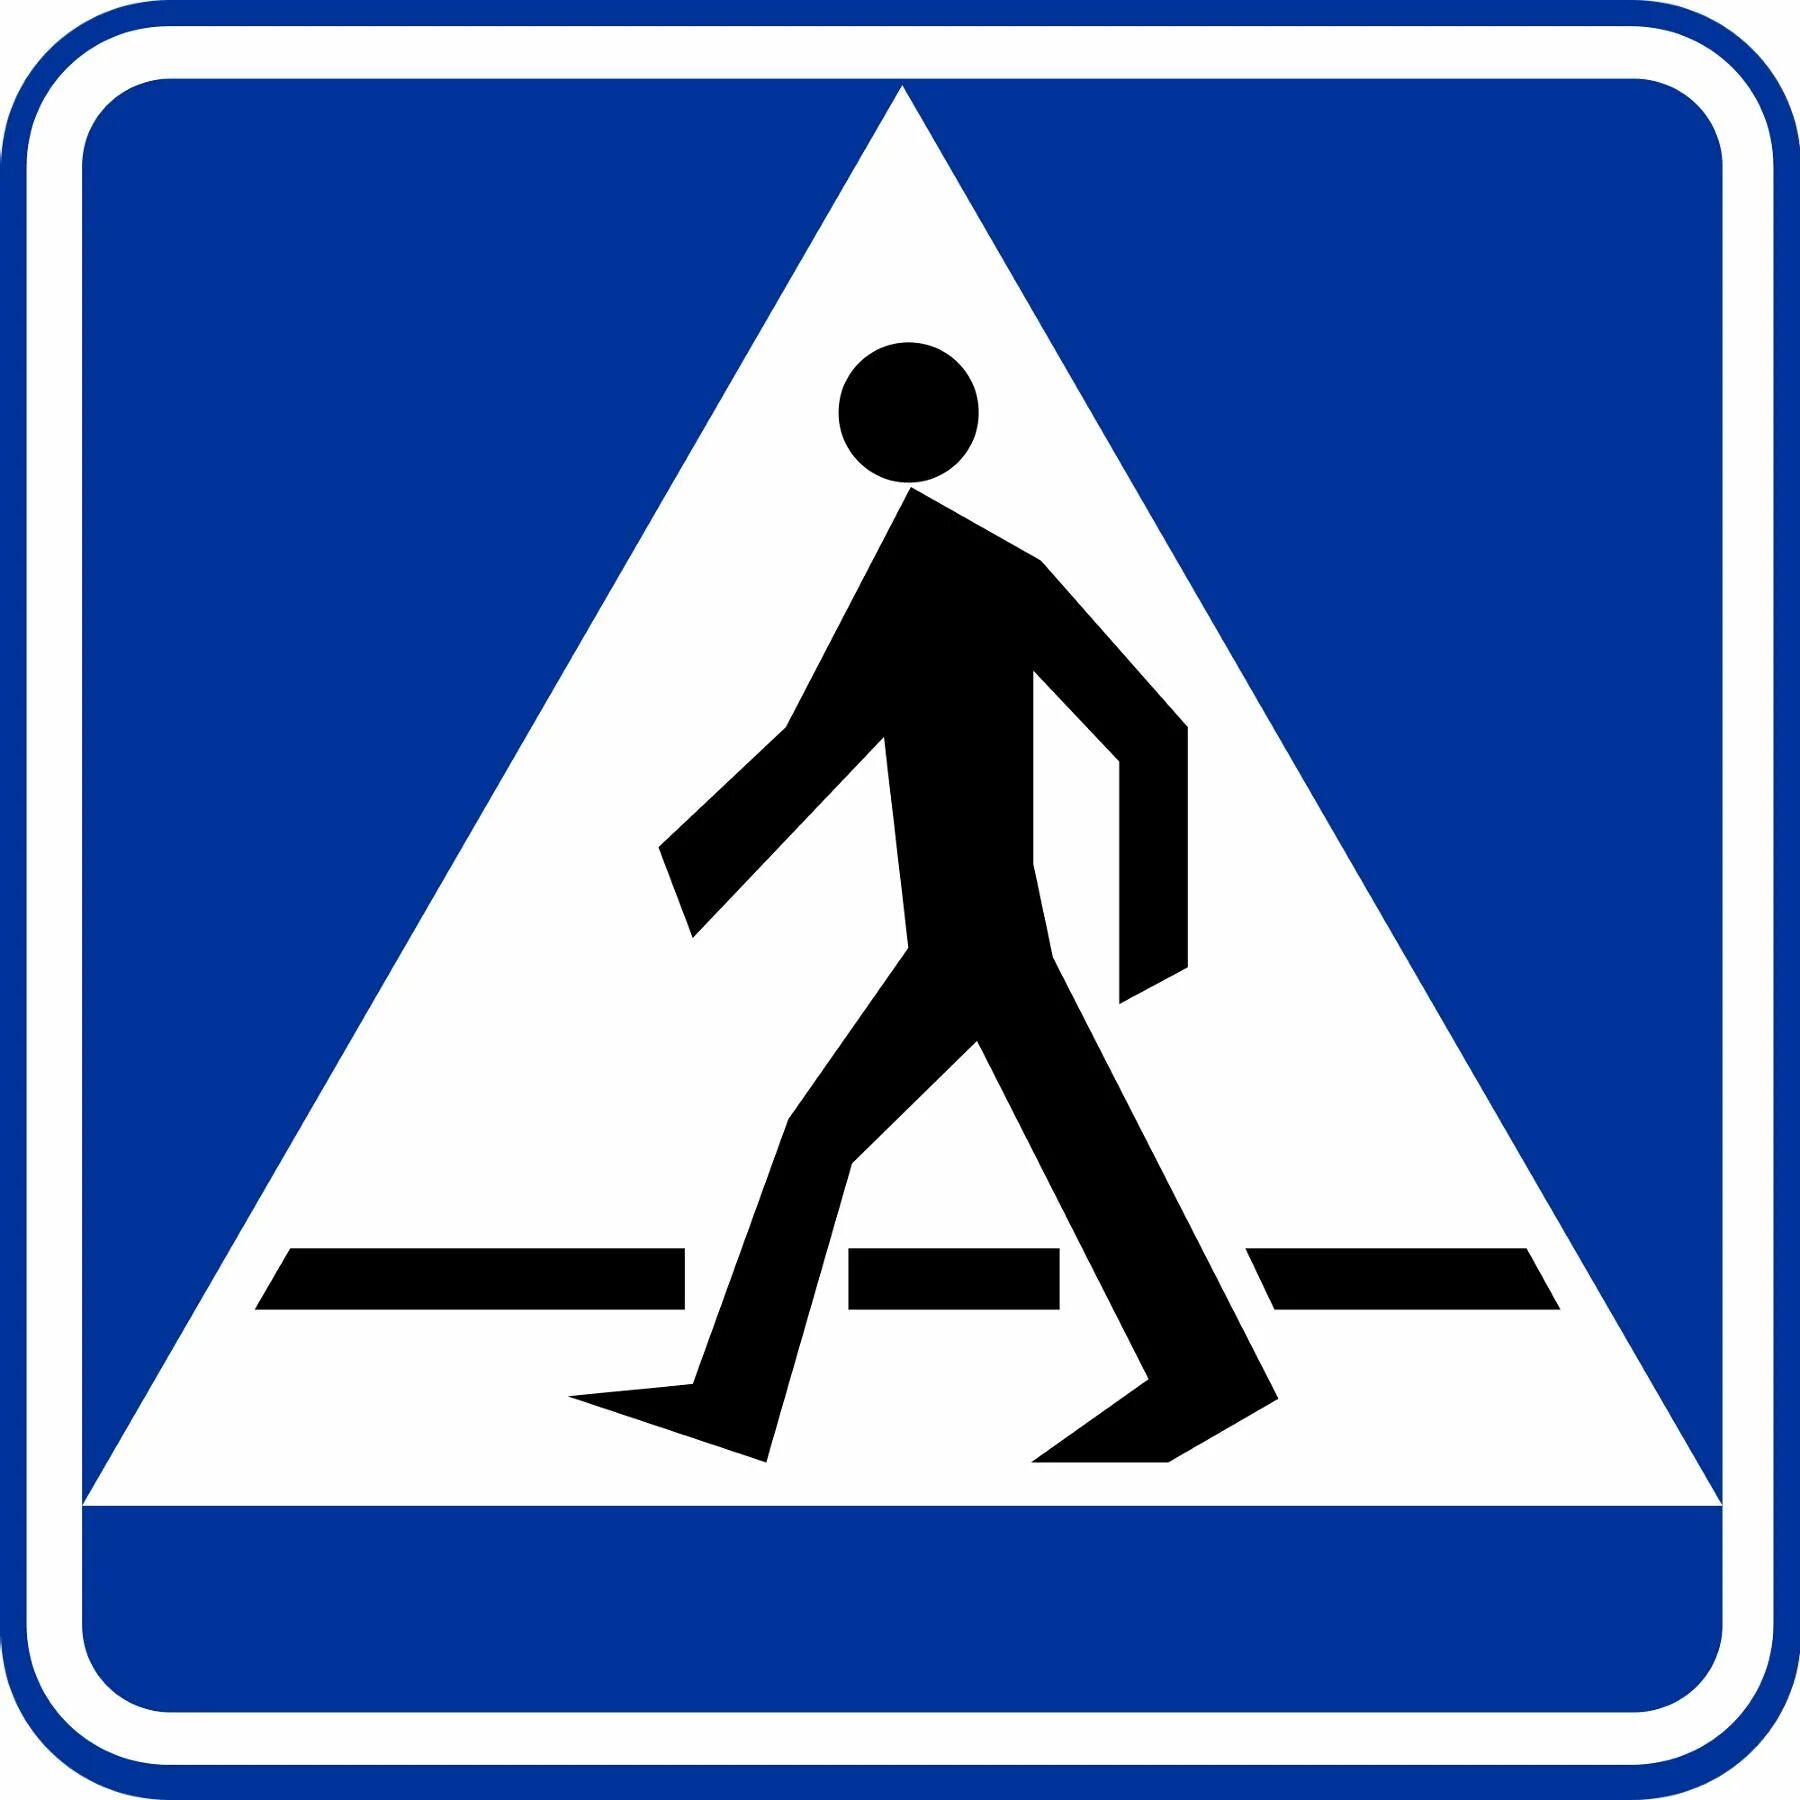 Знак пешехода в треугольнике. Знаки для пешеходов. Знак пешеходный переход. Дорожные знаки для пешеходов. Знак дорожного перехода.